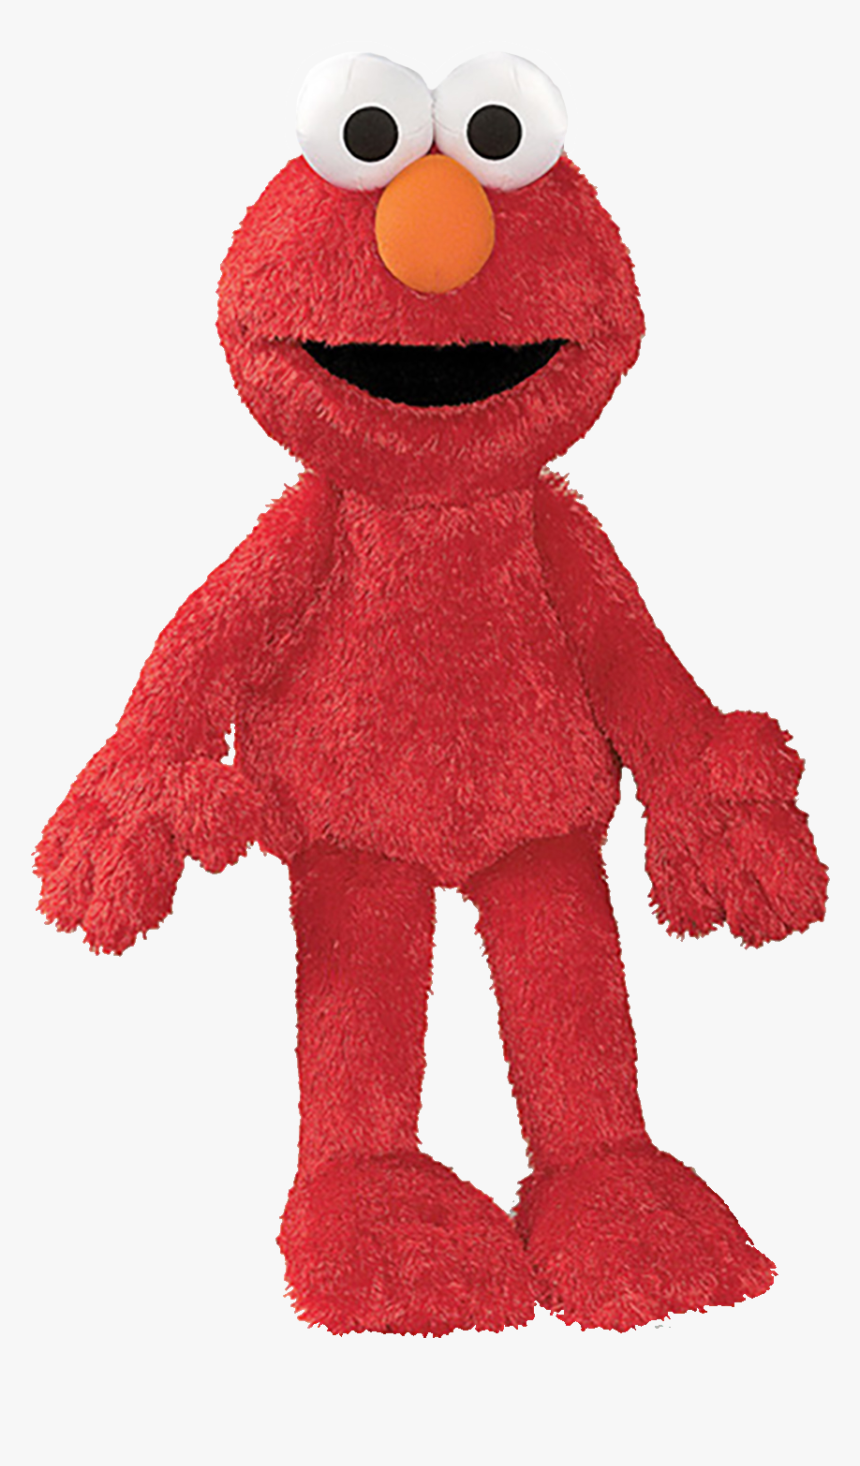 Anthonythepepsifan Roblox Wikia Sesame Street Elmo Plush Toy Hd - toy roblox noob plush